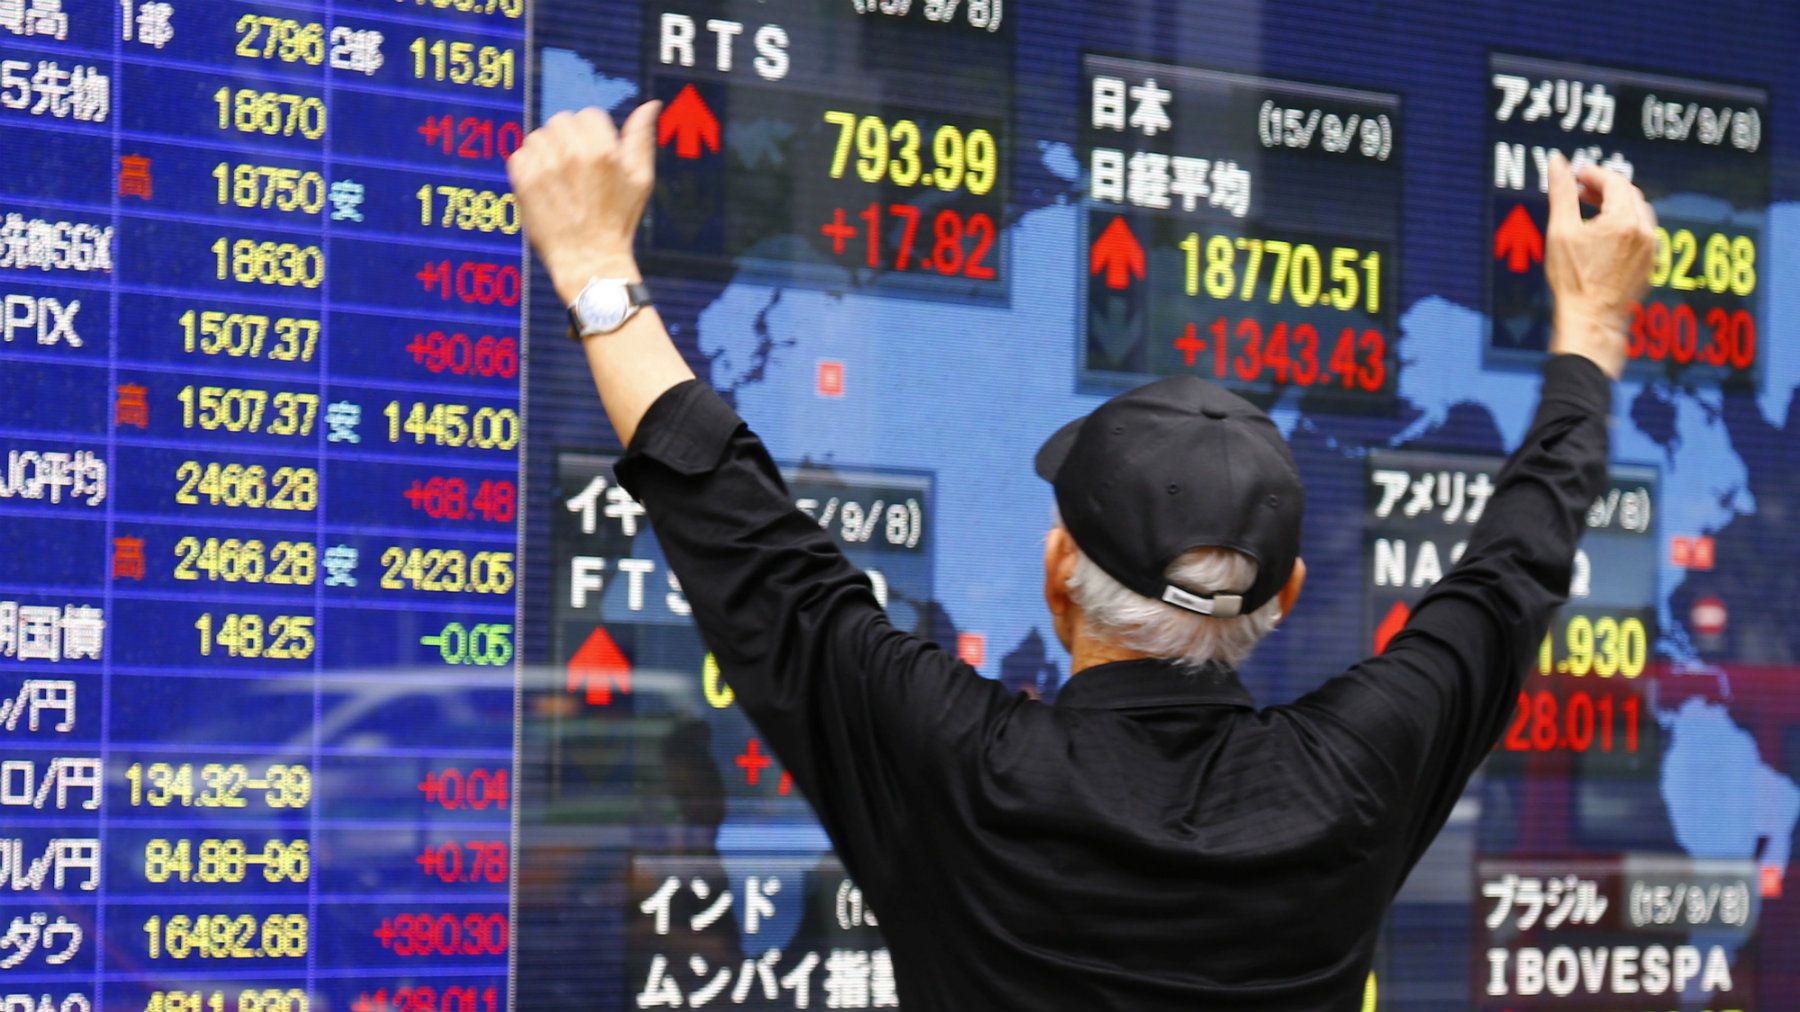 Chinese, Hong Kong Shares Rise as Japanese Stocks Fall